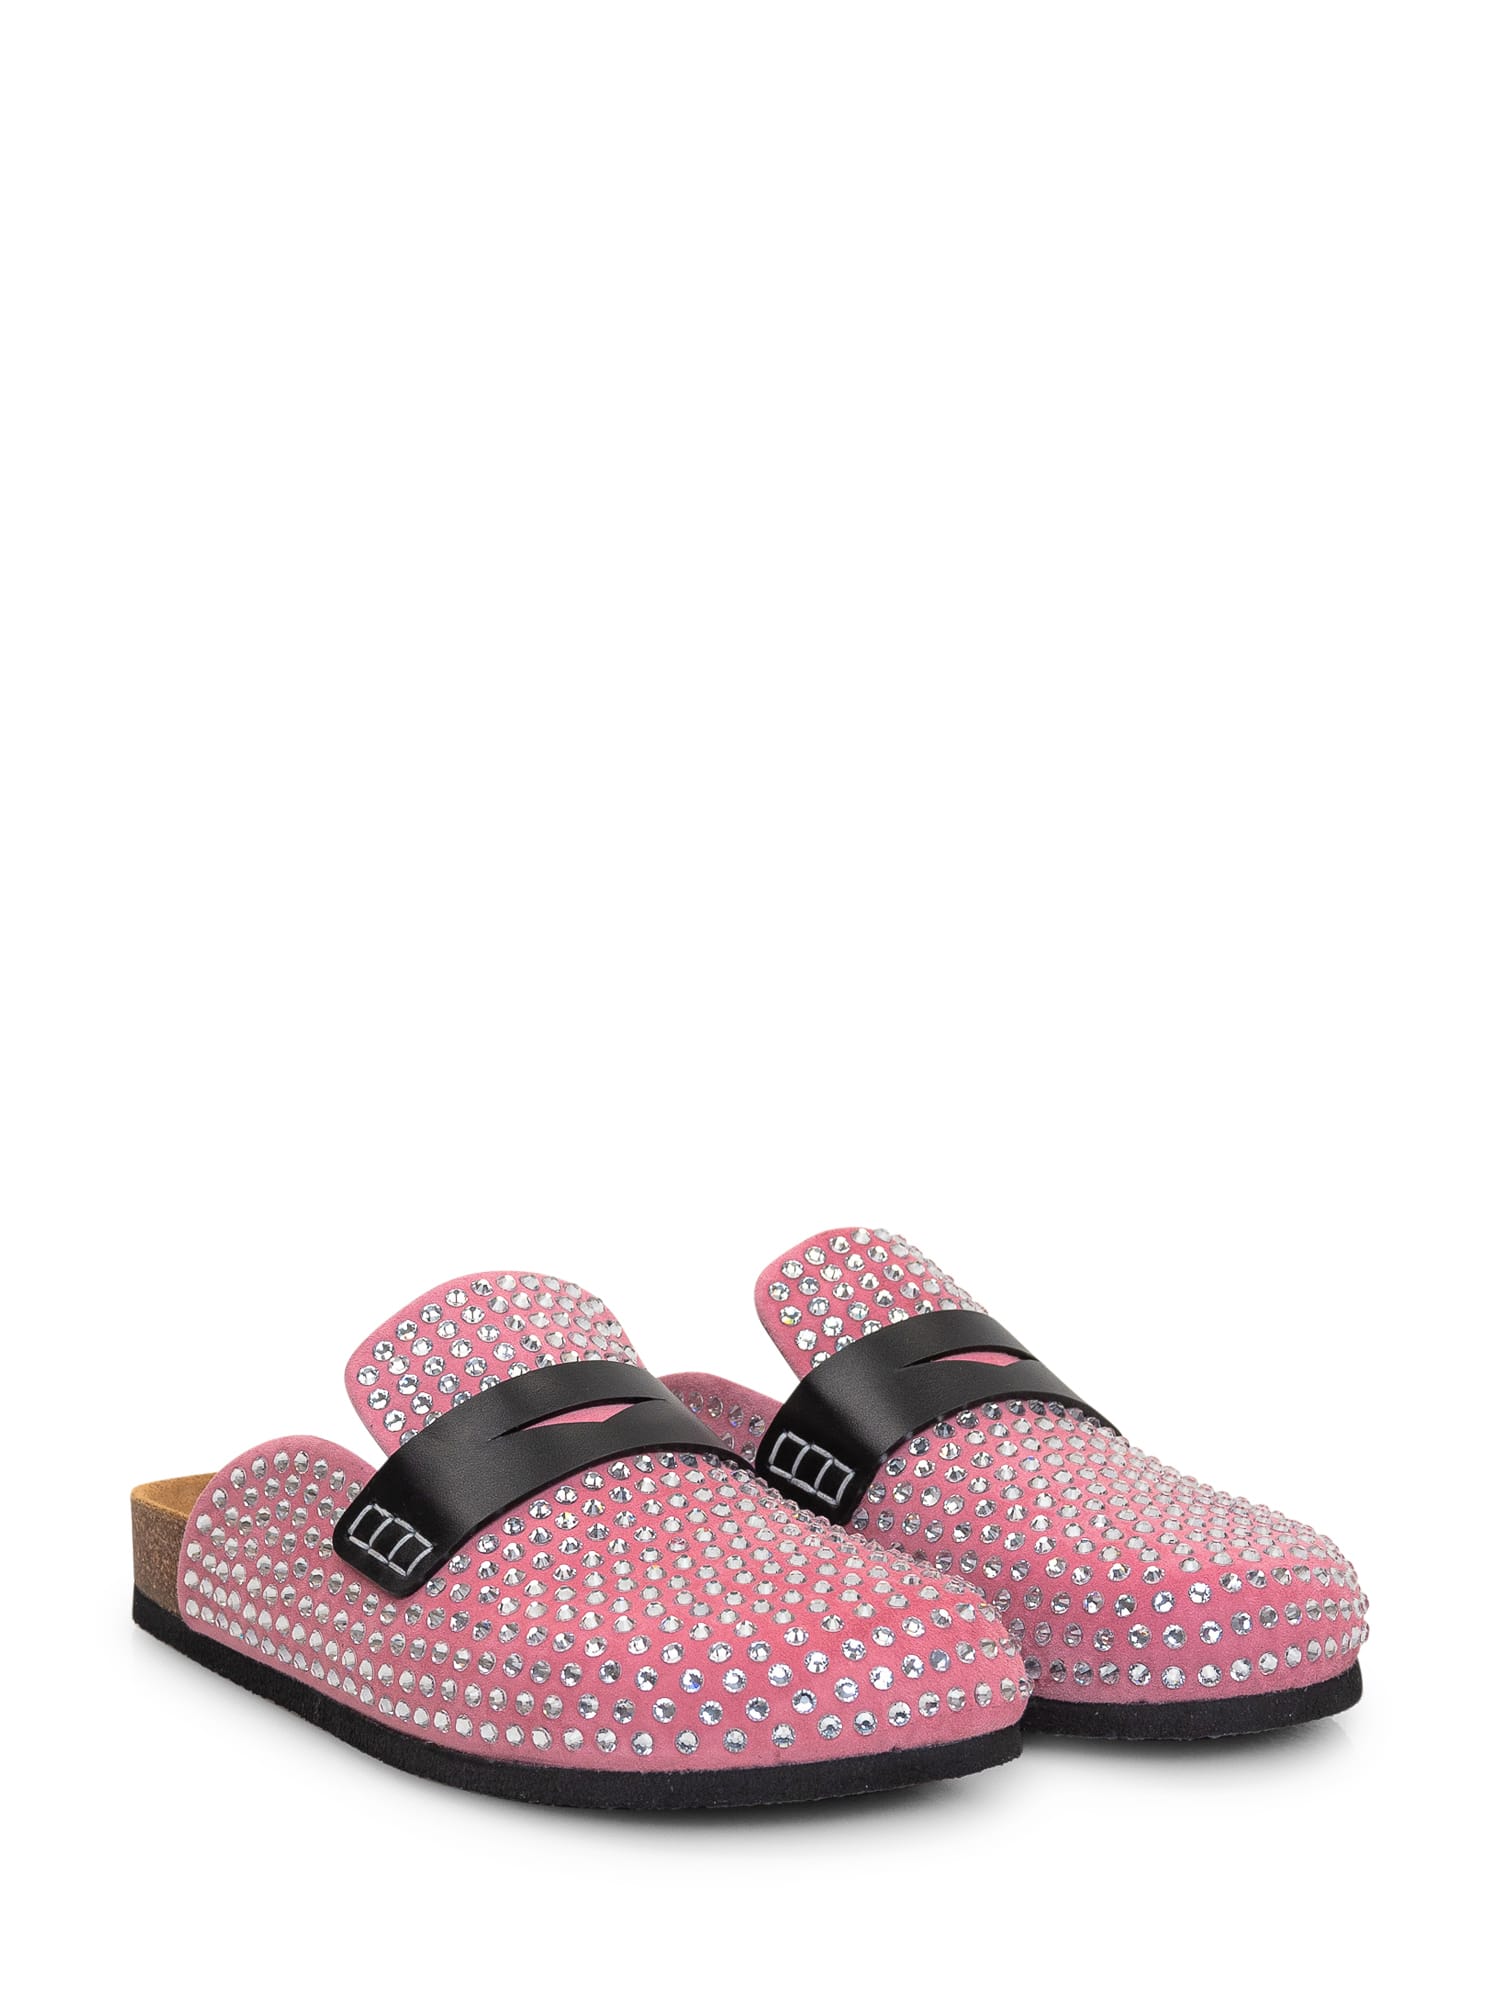 Shop Jw Anderson Crystal Mule Sandal In Pink Crystal